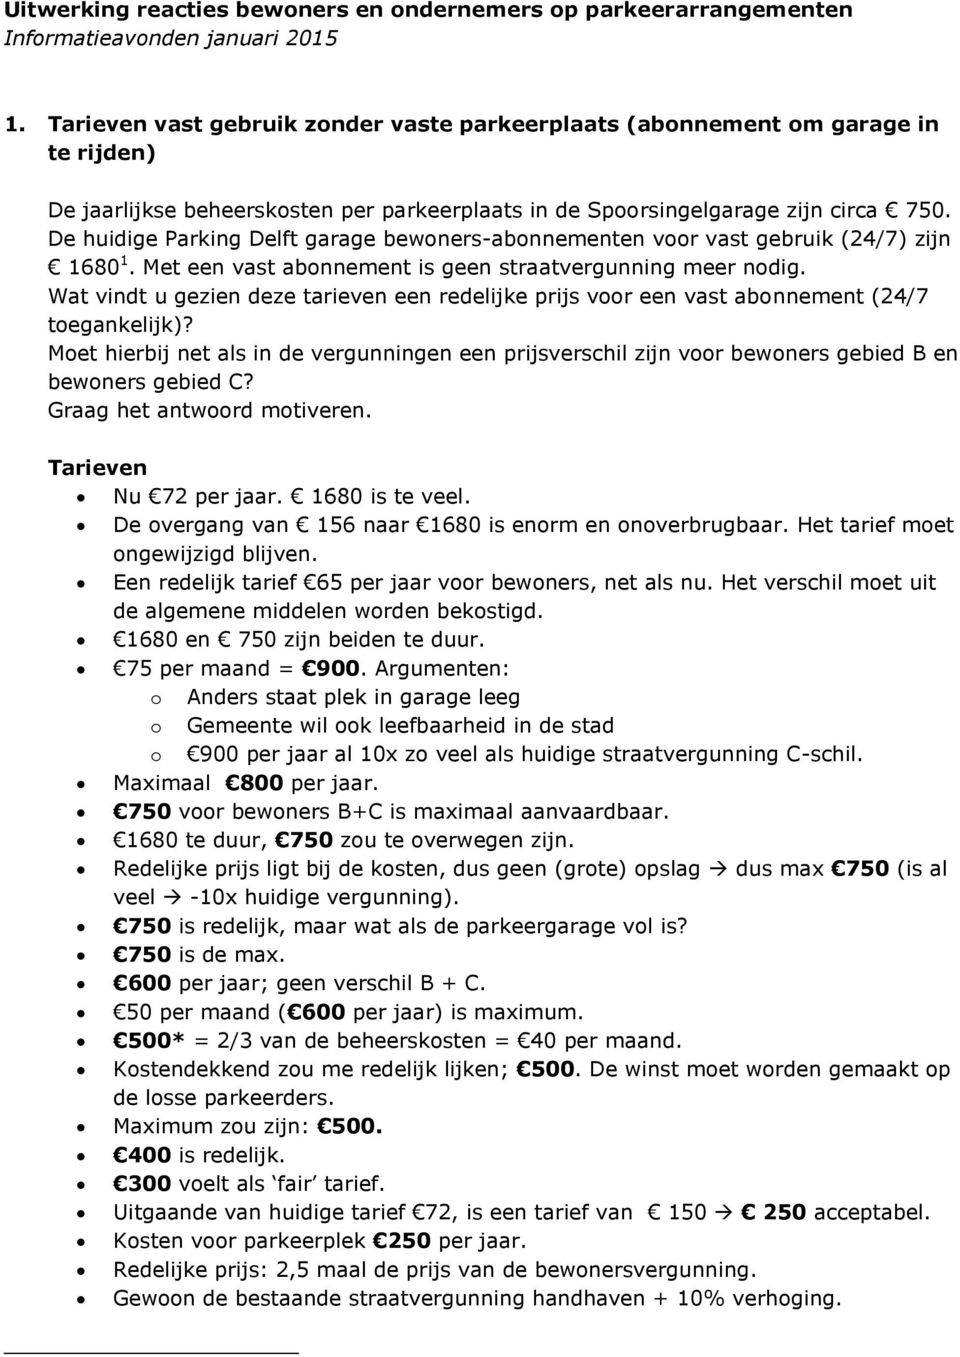 De huidige Parking Delft garage bewoners-abonnementen voor vast gebruik (24/7) zijn 1680 1. Met een vast abonnement is geen straatvergunning meer nodig.